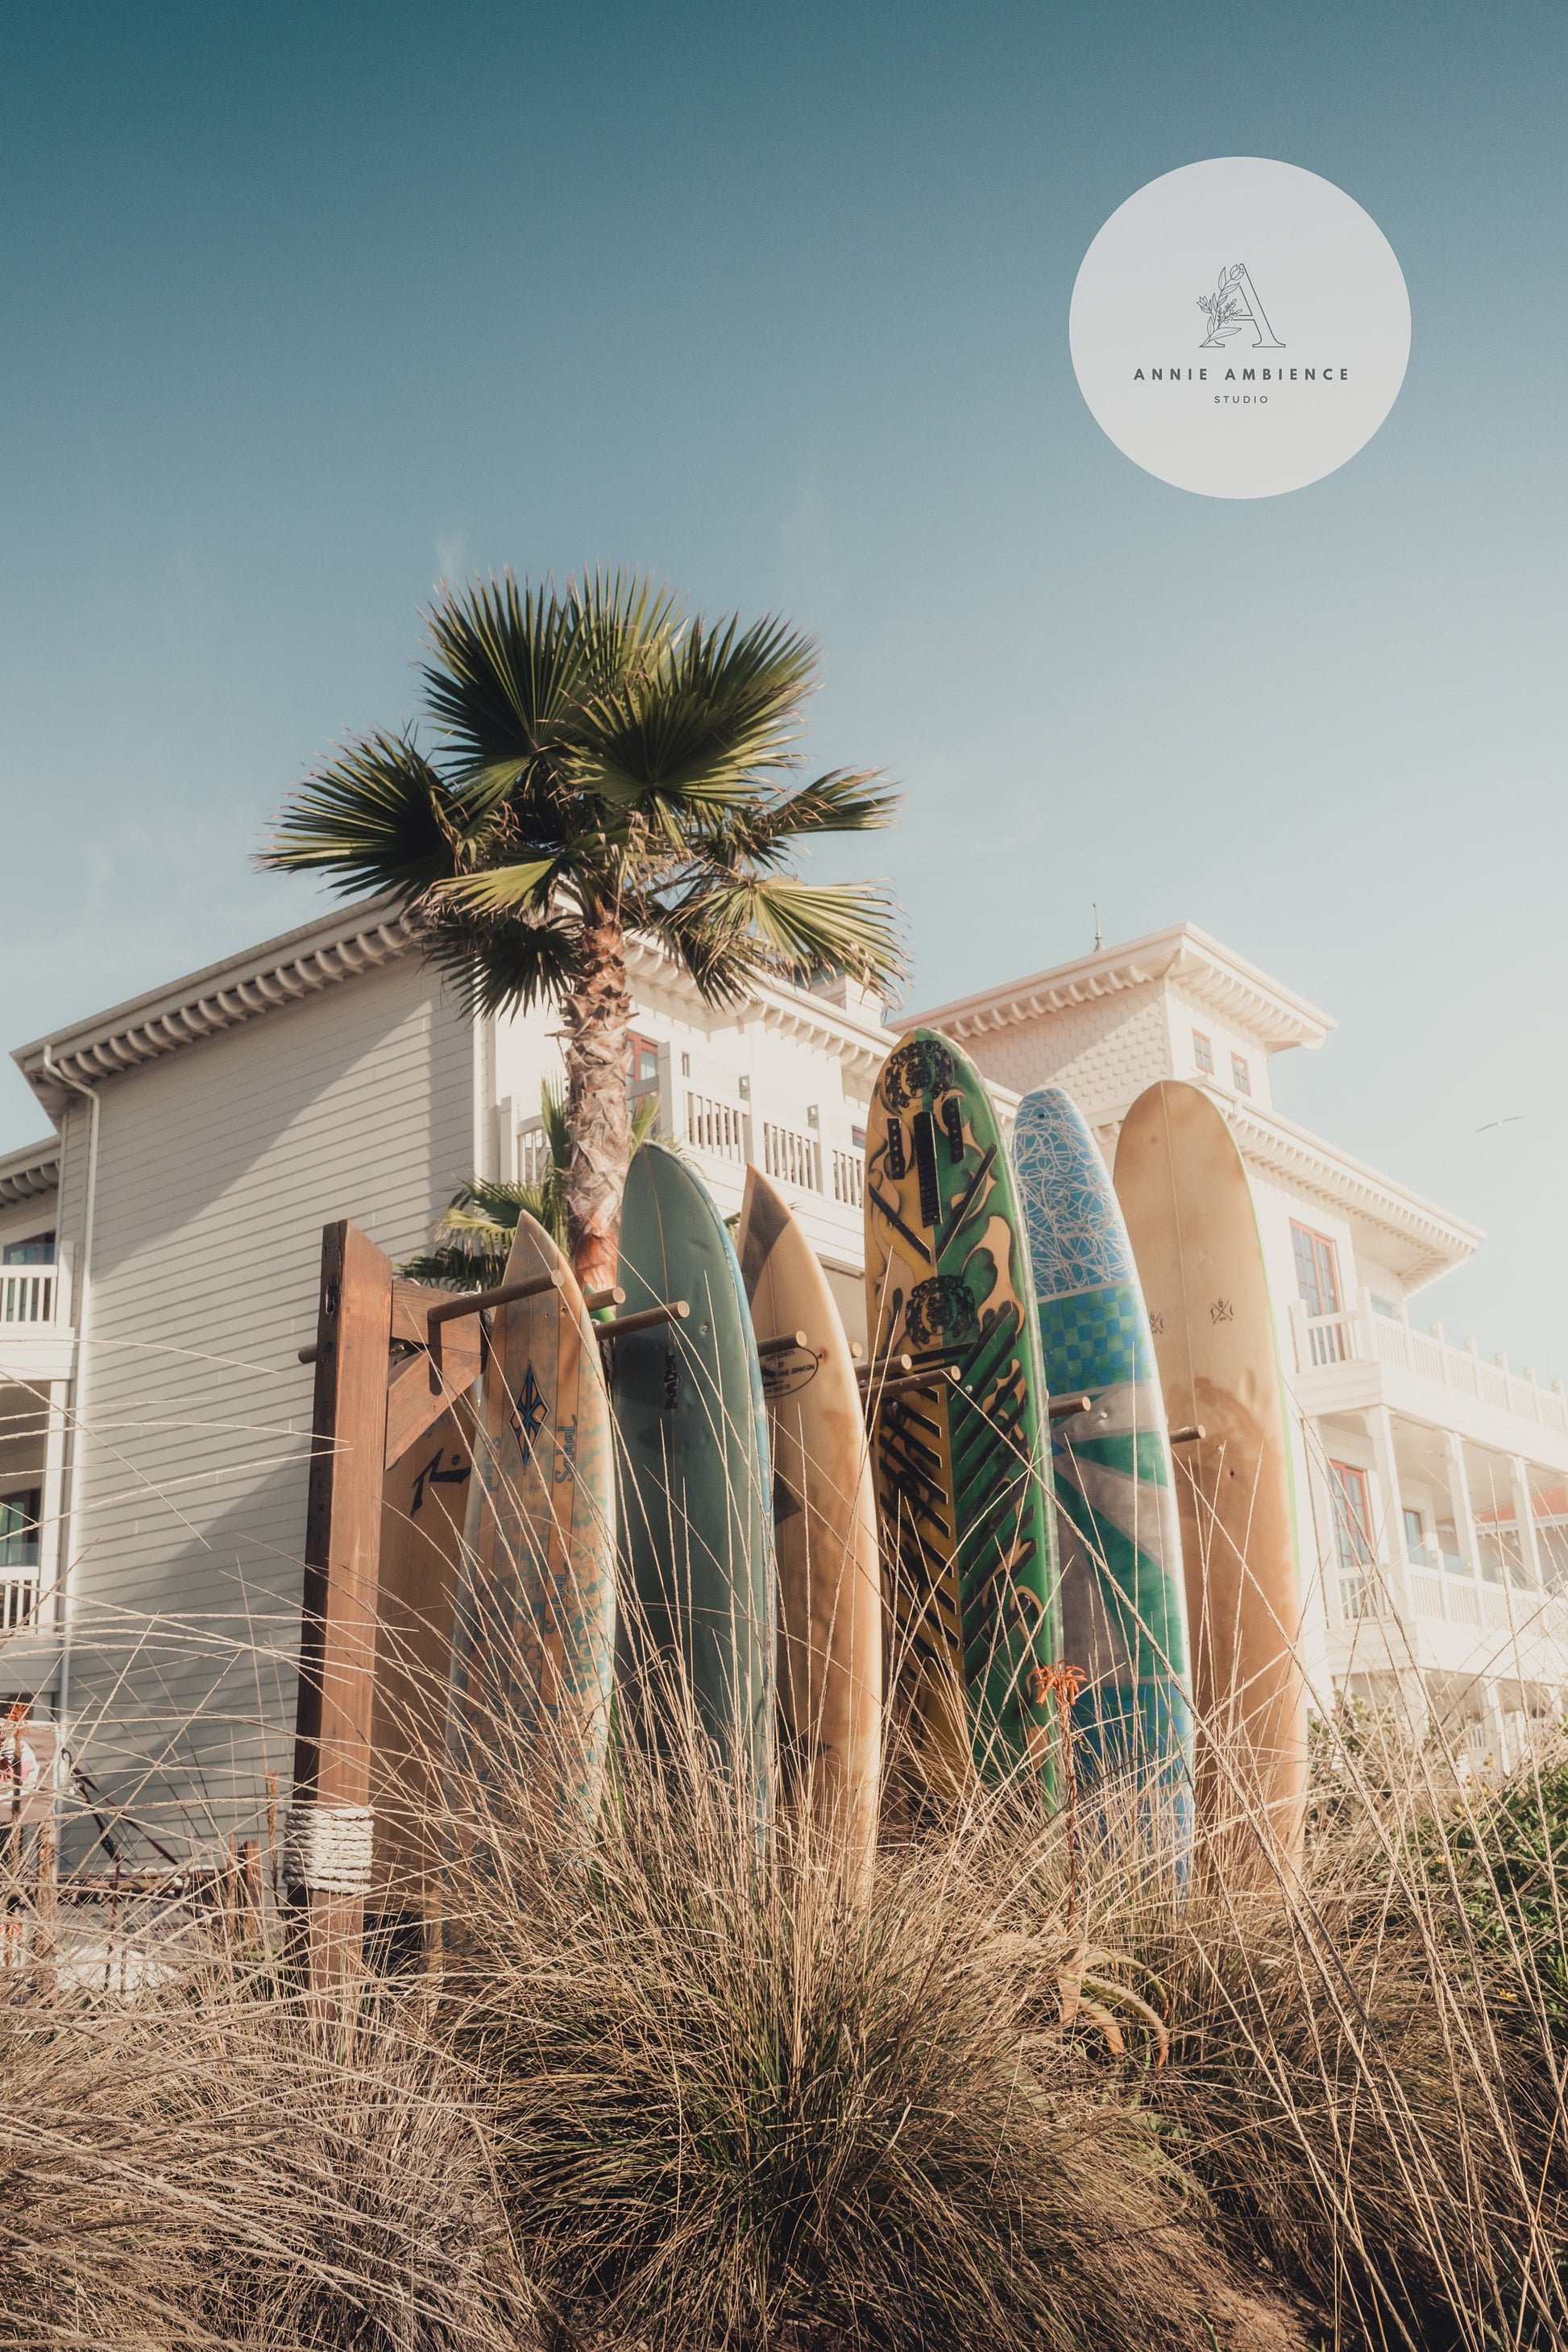 San Diego Surfboard Coastal Framed California Decor Photography Set of 3 Fine Art Coastal Beach House Decor Framed Photo Large Sunset Beach